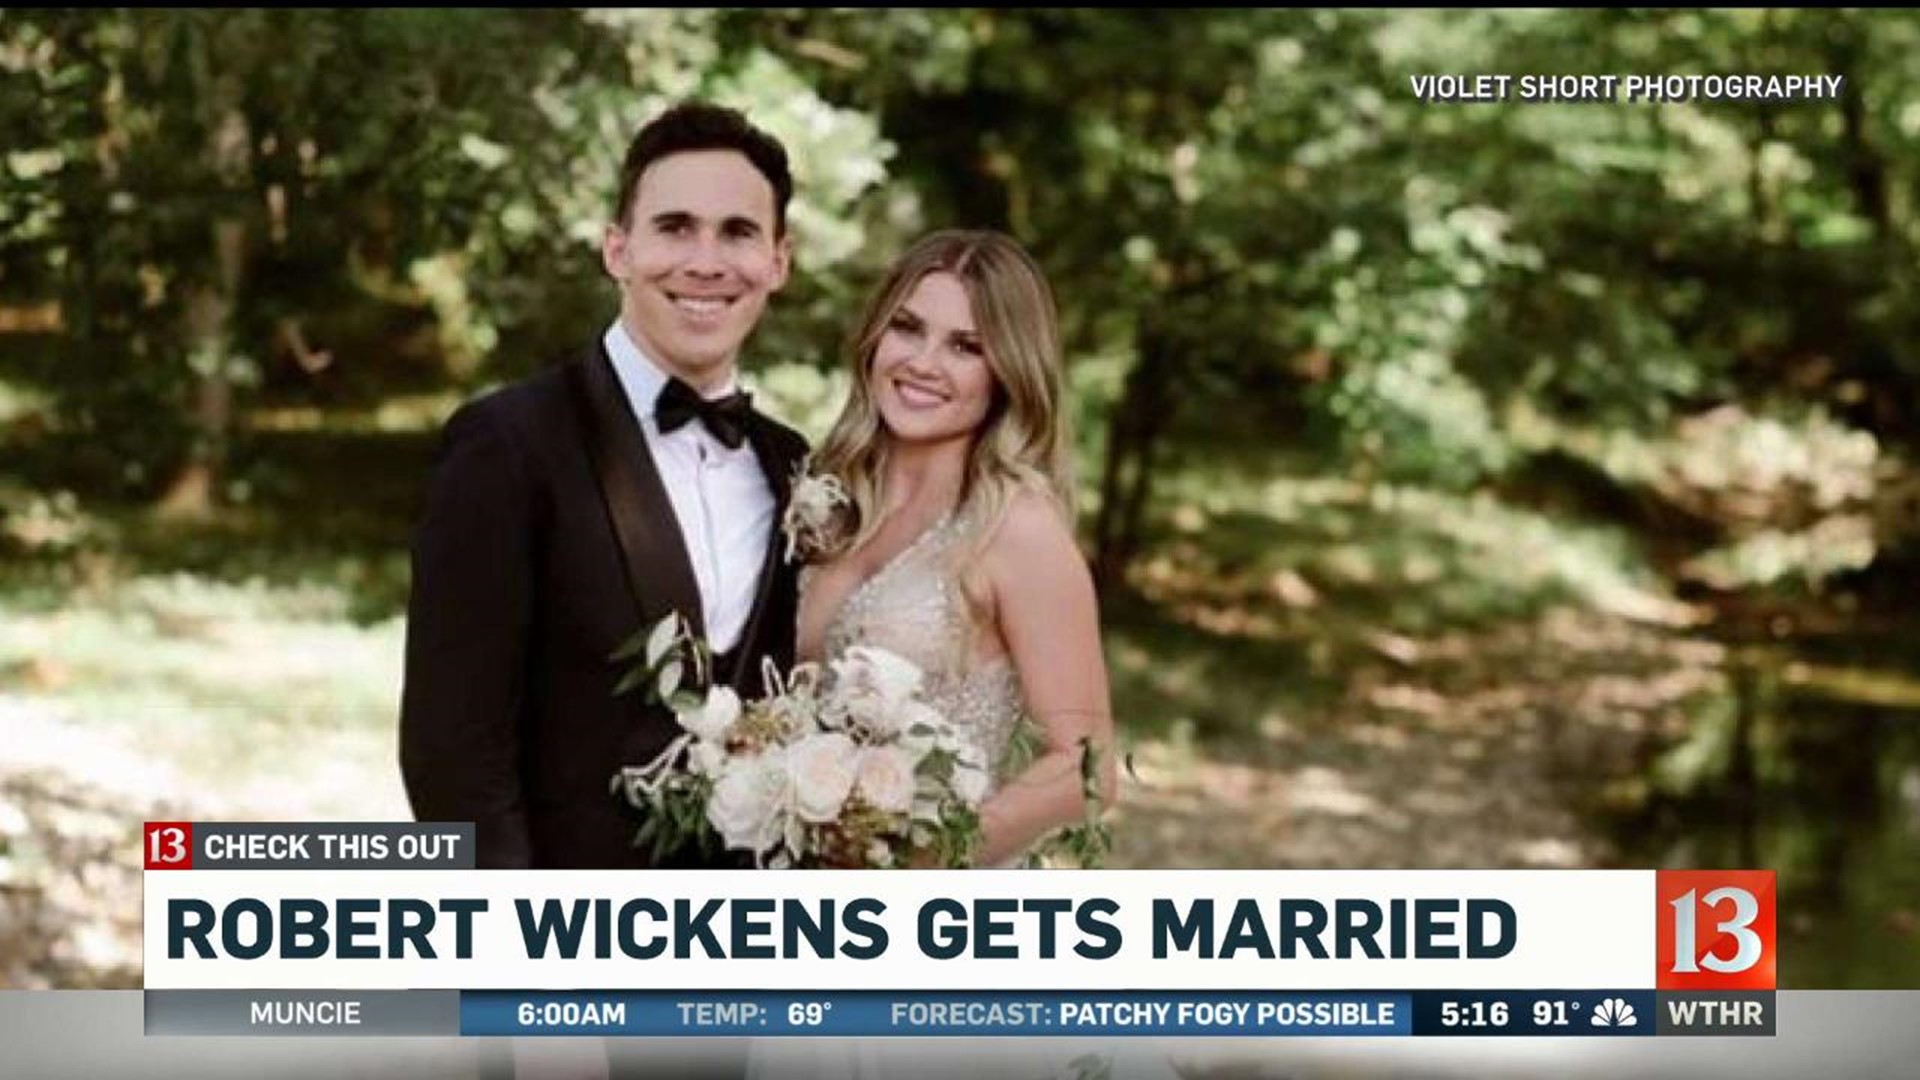 Robert Wickens gets married